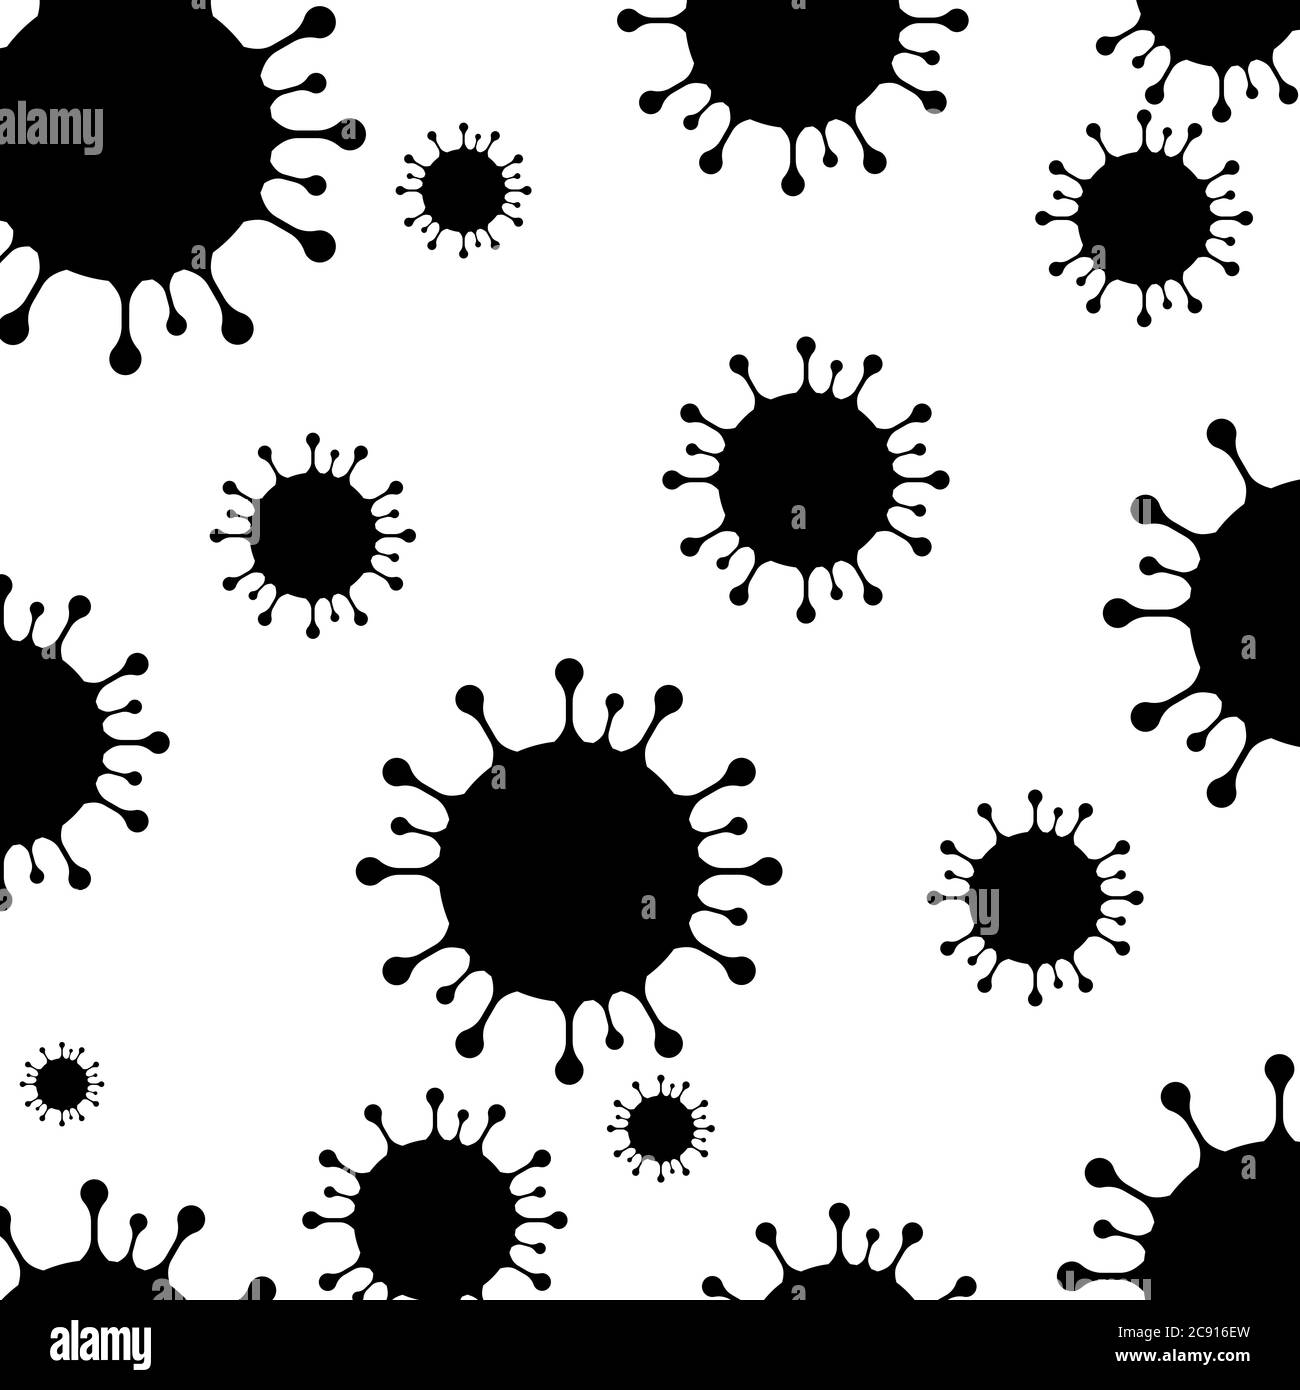 Illustrazione in bianco e nero del virus Corona per sfondo. Rendering del virus corona per background. Foto Stock